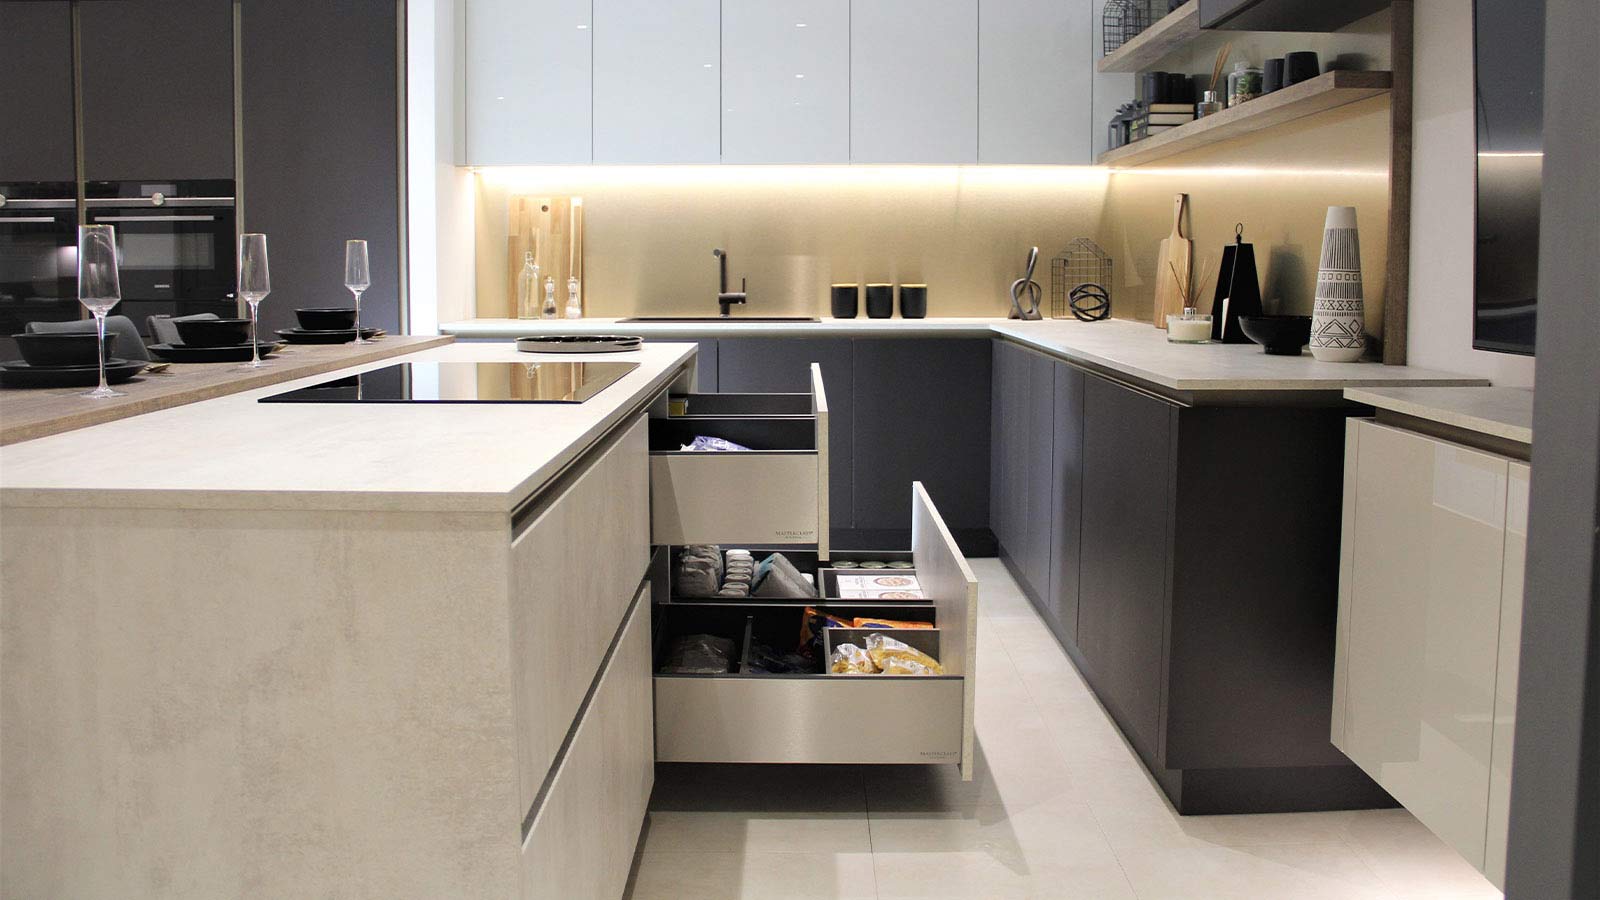 Modern kitchen storage in a modern luxury kitchen